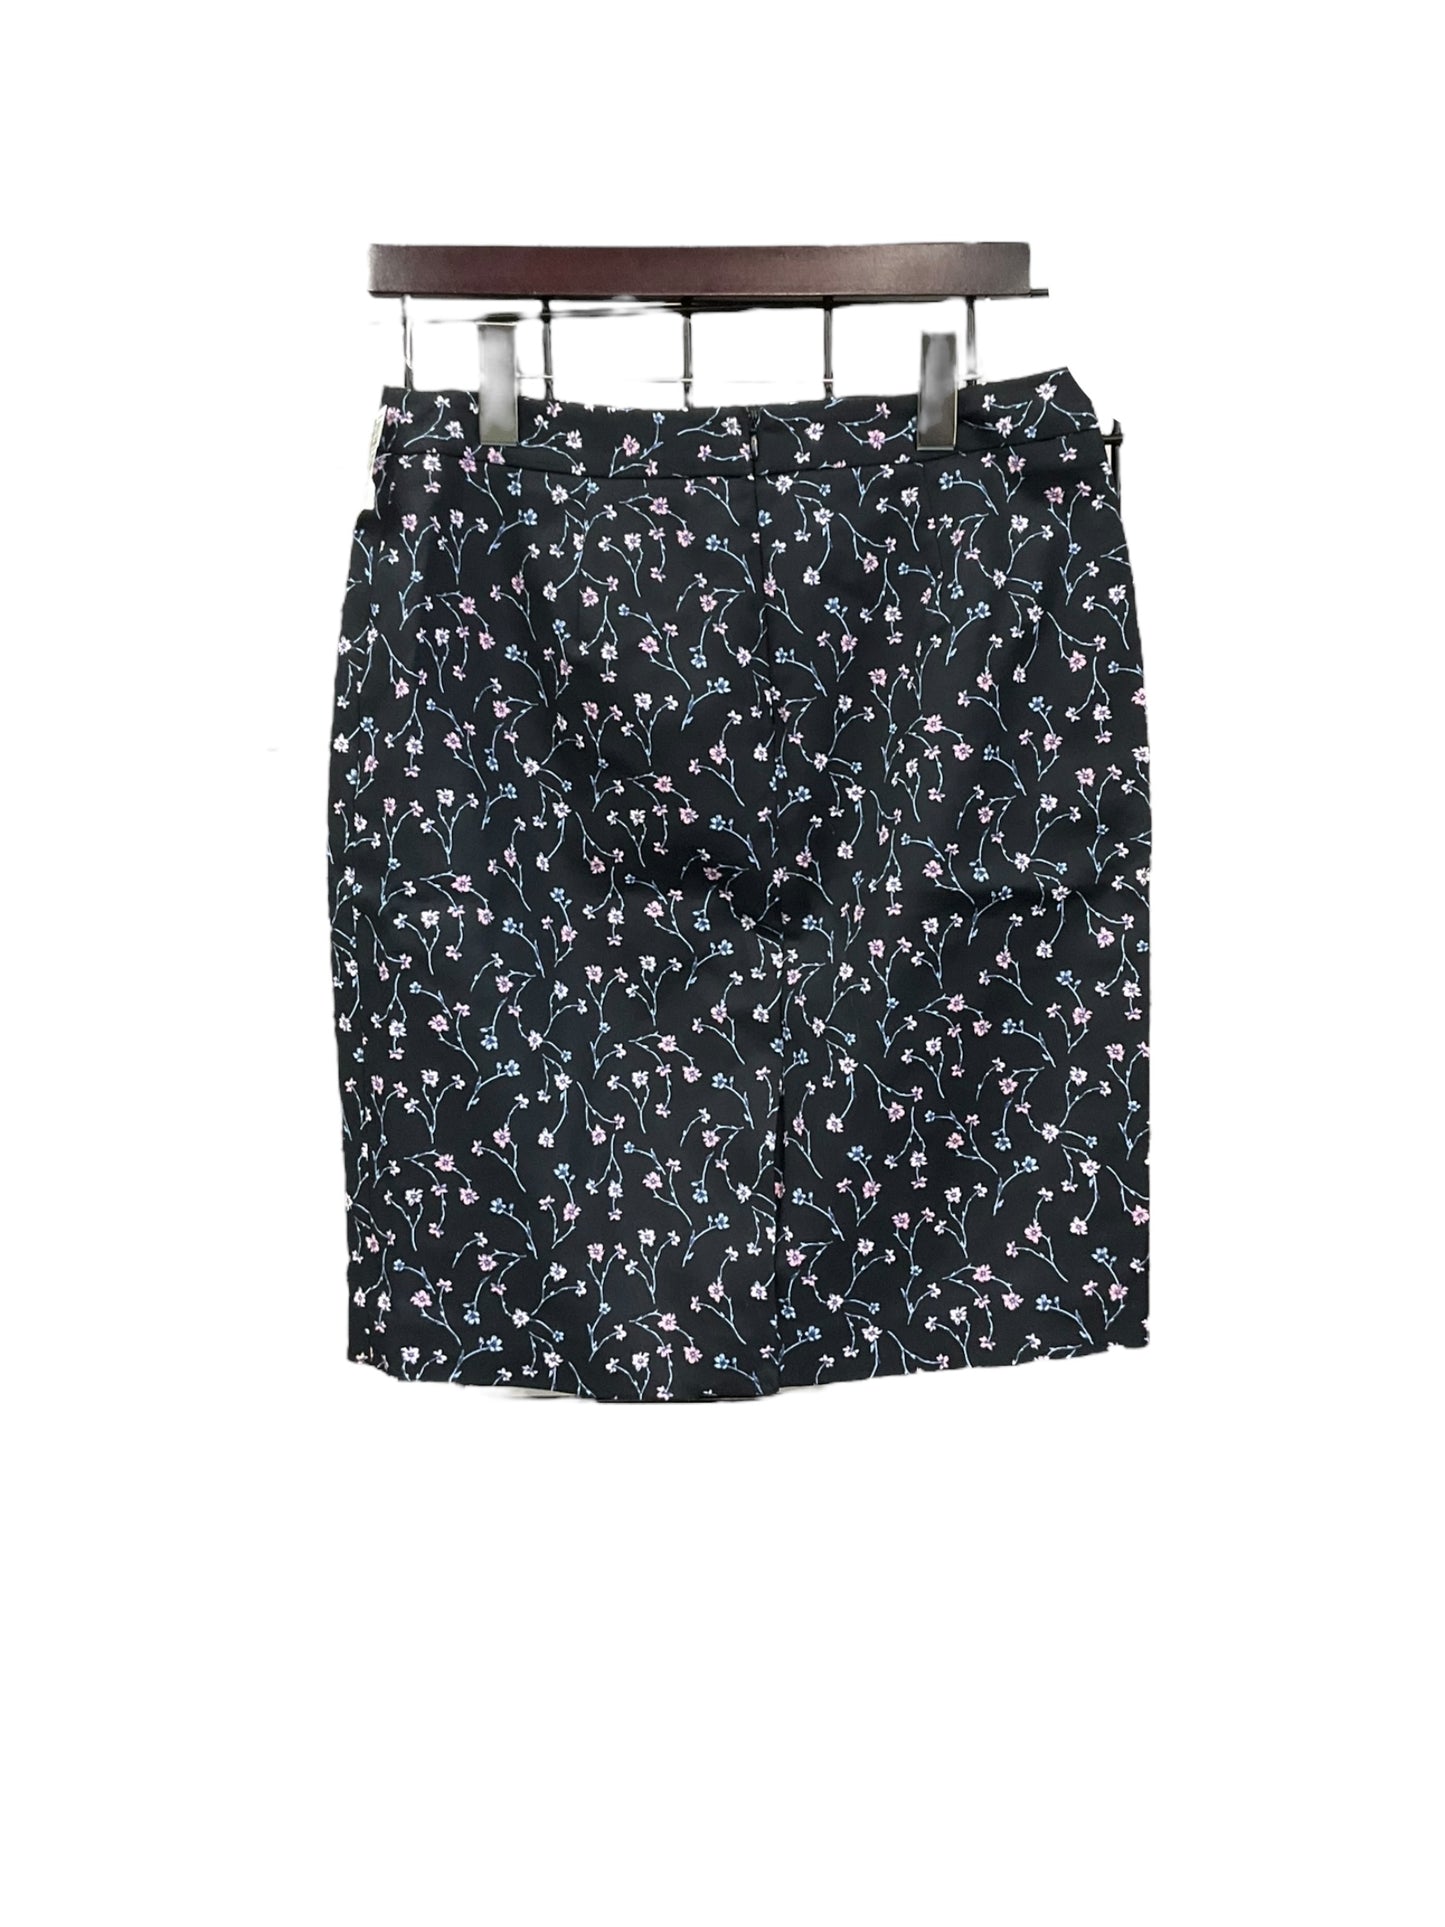 Skirt Midi By Liz Claiborne  Size: S